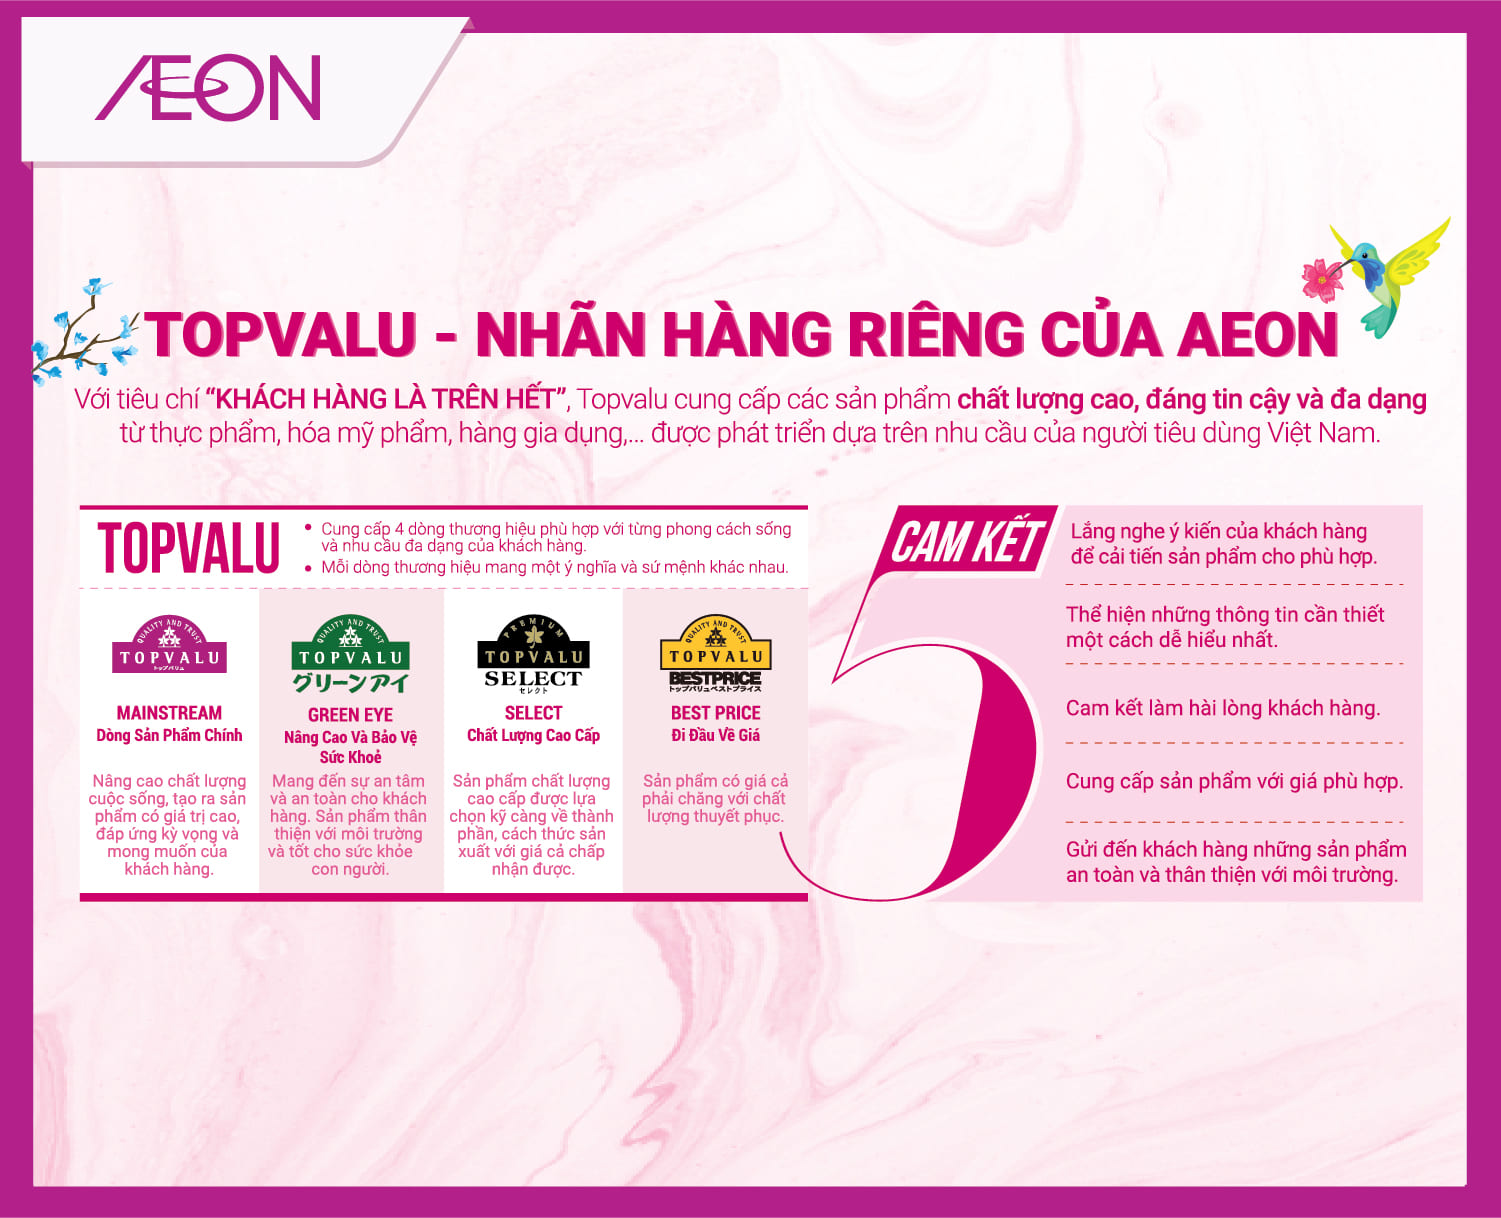 TOPVALU tự hào là một thương hiệu độc quyền của AEON, mang đến sản phẩm phù hợp với nhu cầu người tiêu dùng Việt